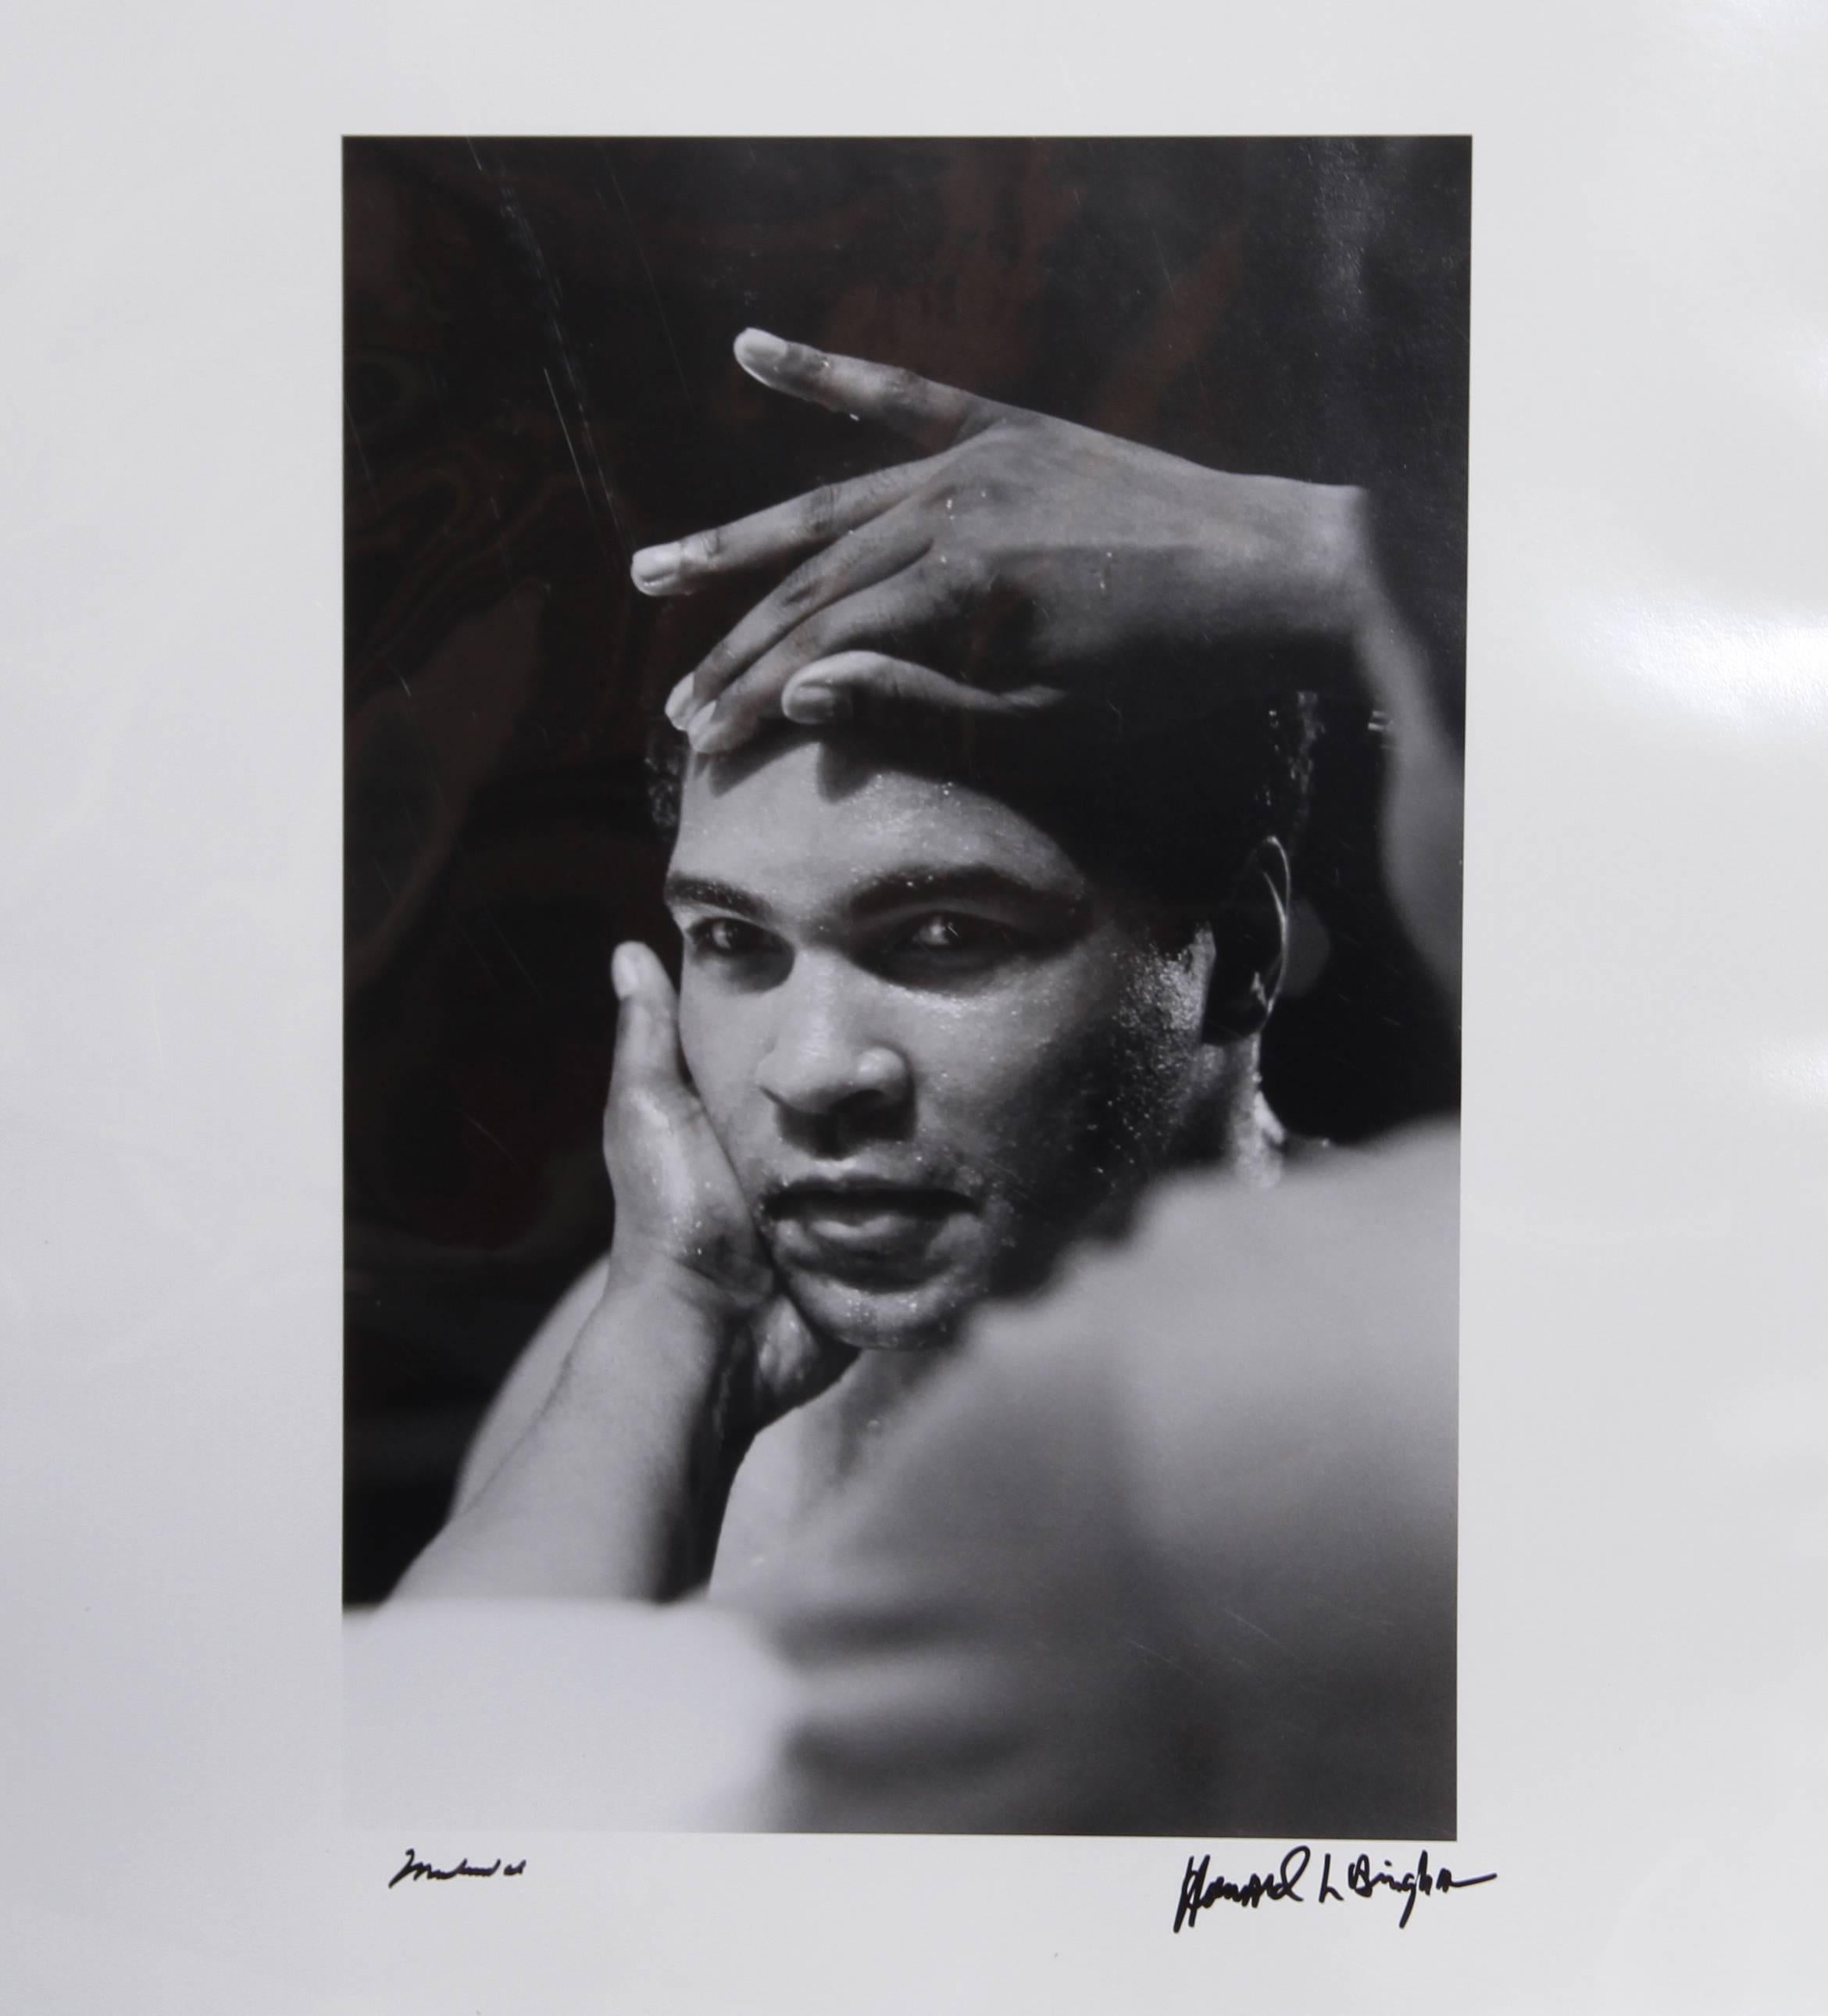 Künstler 1: Jeff Koons, Amerikaner (1954 - ) 
Künstler 2: Howard L. Bingham, Amerikaner (1939 - )

Titel: GOAT: Eine Hommage an Muhammad Ali - CHAMPS-Ausgabe

Buch: Hardcover-Buch in Clamshell-Box, signiert und nummeriert auf dem Frontispiz von